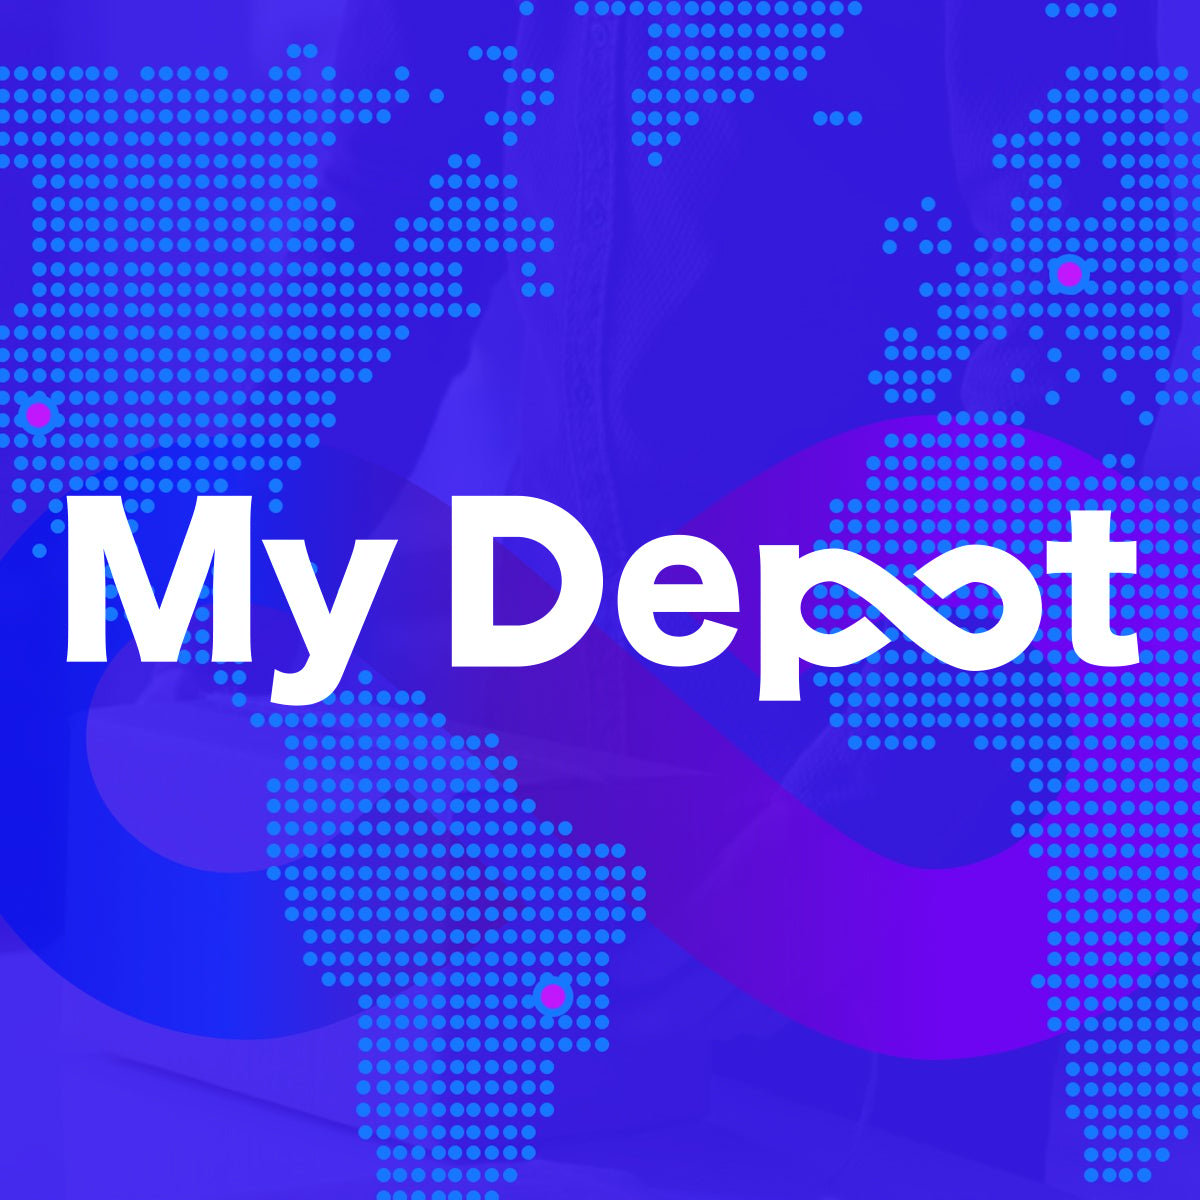 Mydepot Inc